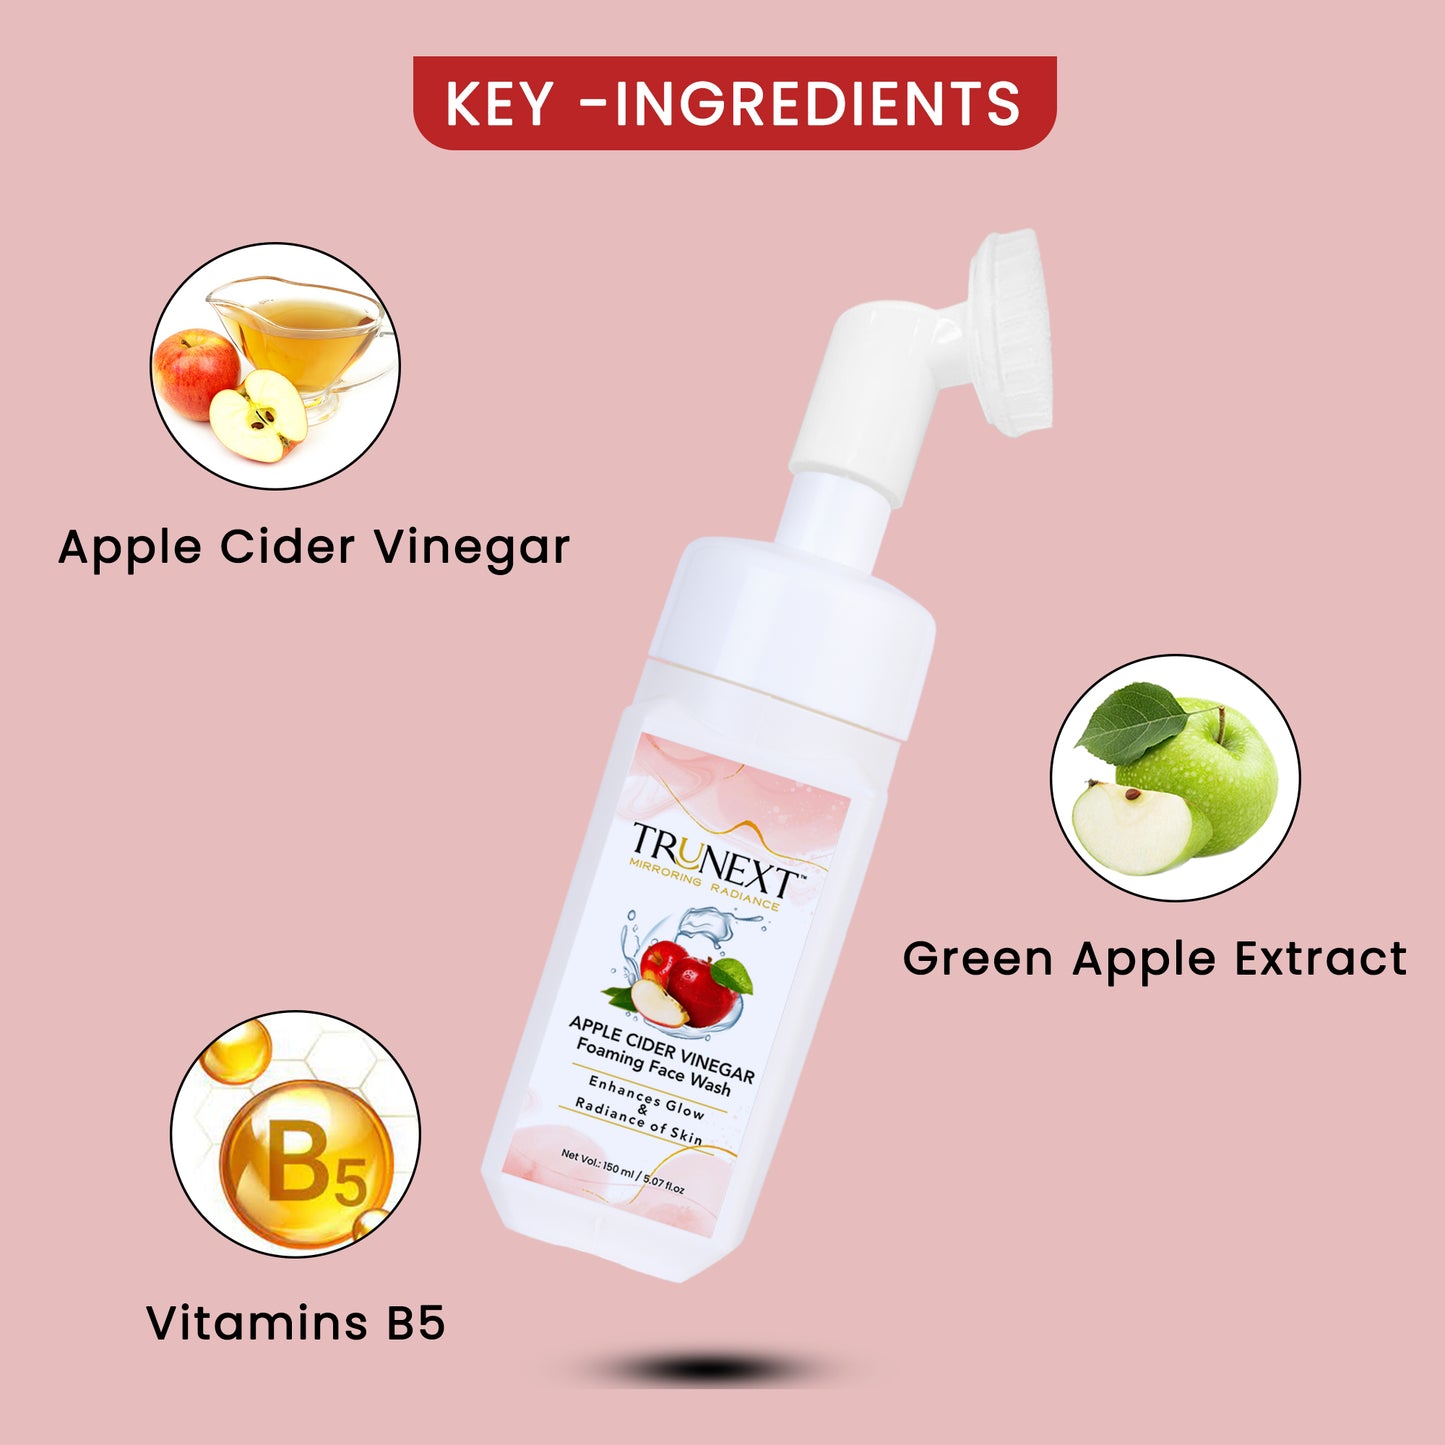 Apple Cider Vinegar Foaming Face Wash (150 ml)